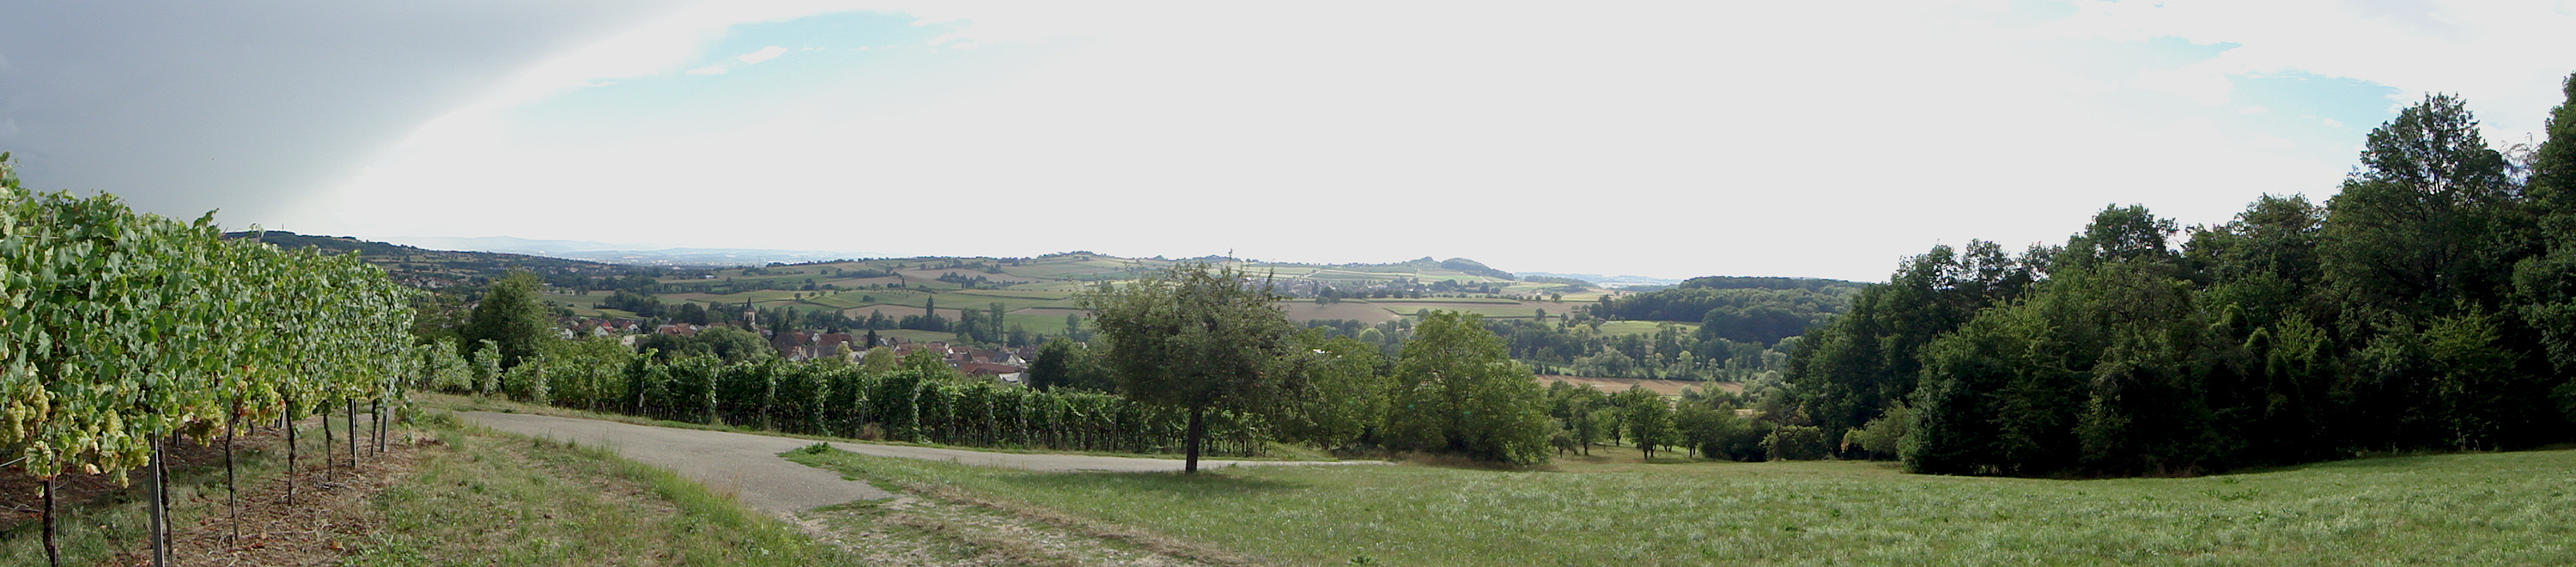 Panorama Rehberg bei Wittlingen